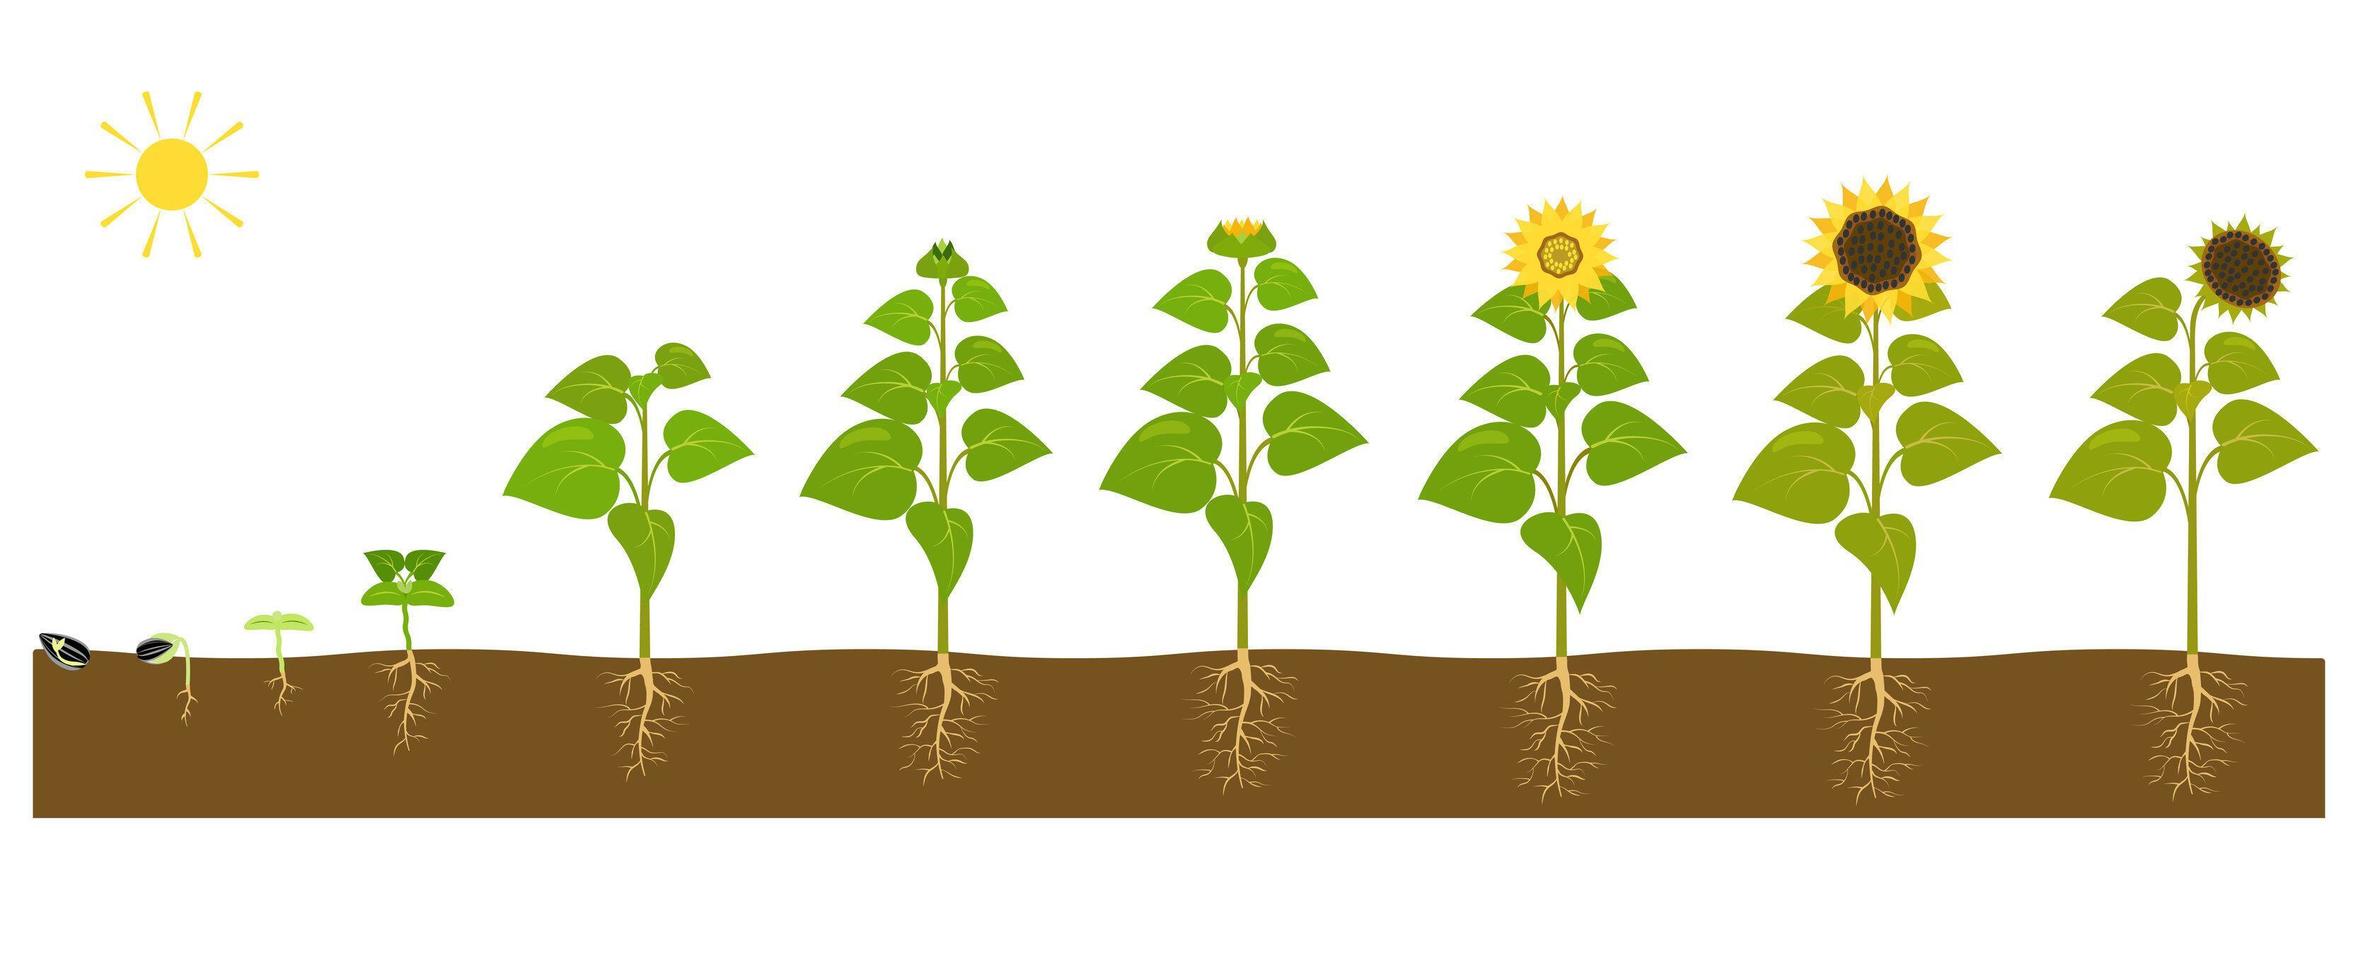 el proceso de cultivo de un girasol desde la semilla hasta la planta madura. vector